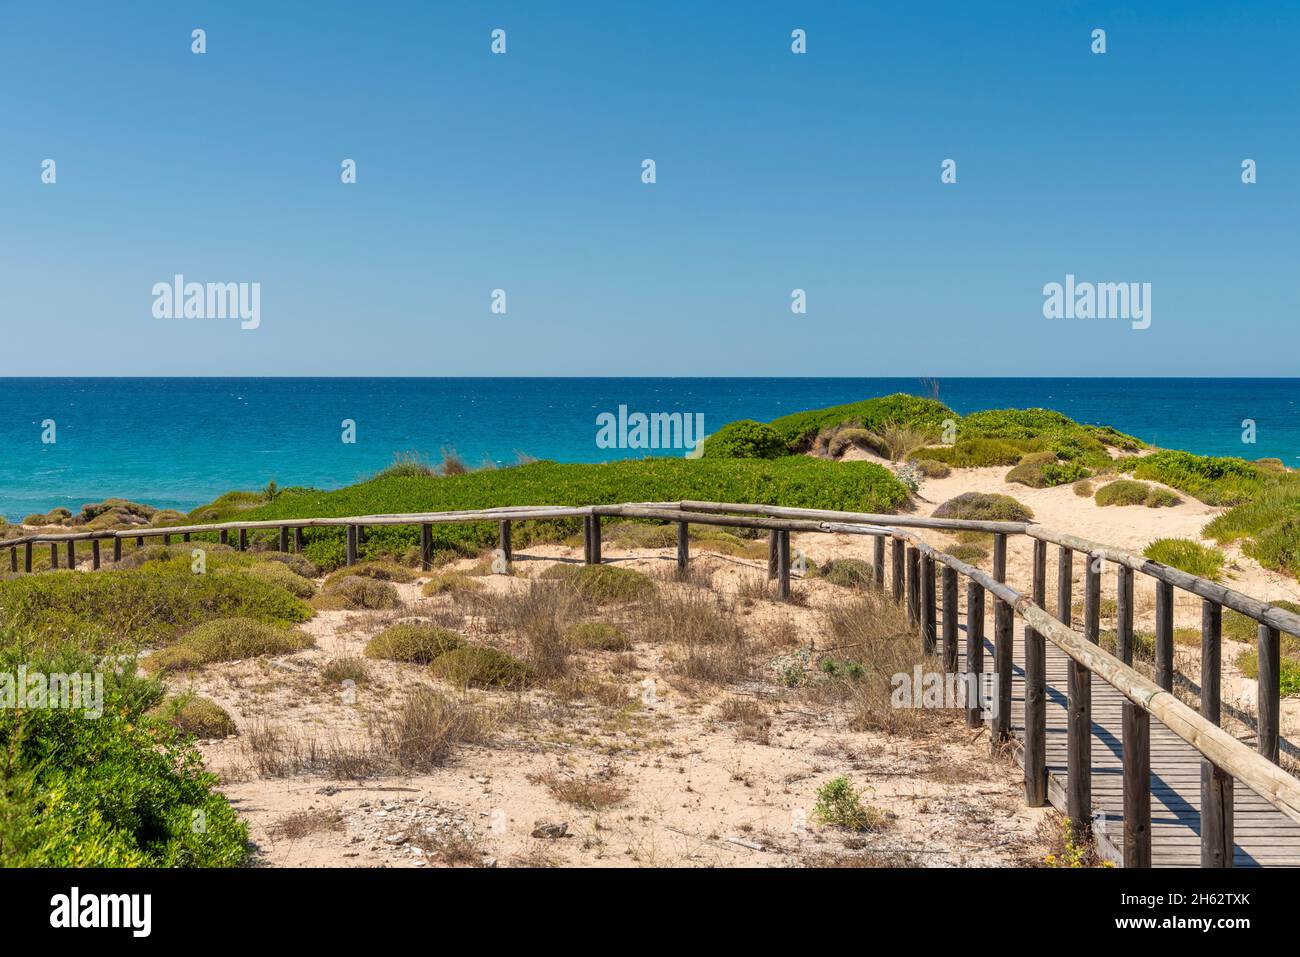 campomarino di maruggio,province of taranto,salento,apulia,italy,beach and dunes near campomarino Stock Photo